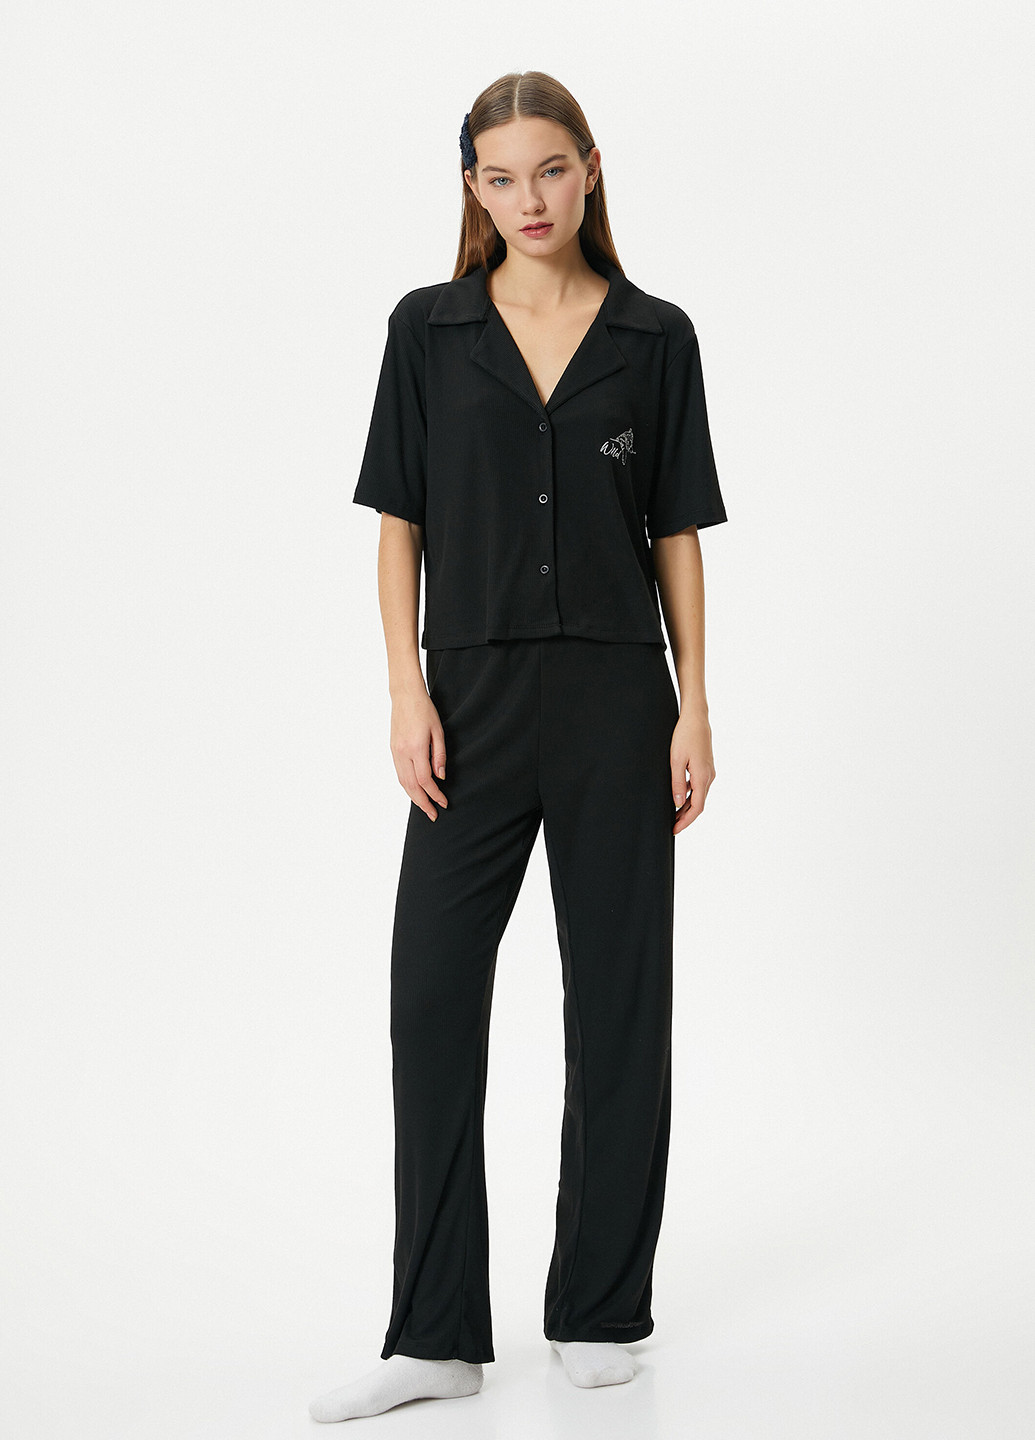 Черная всесезон пижама (рубашка, брюки) рубашка + брюки KOTON